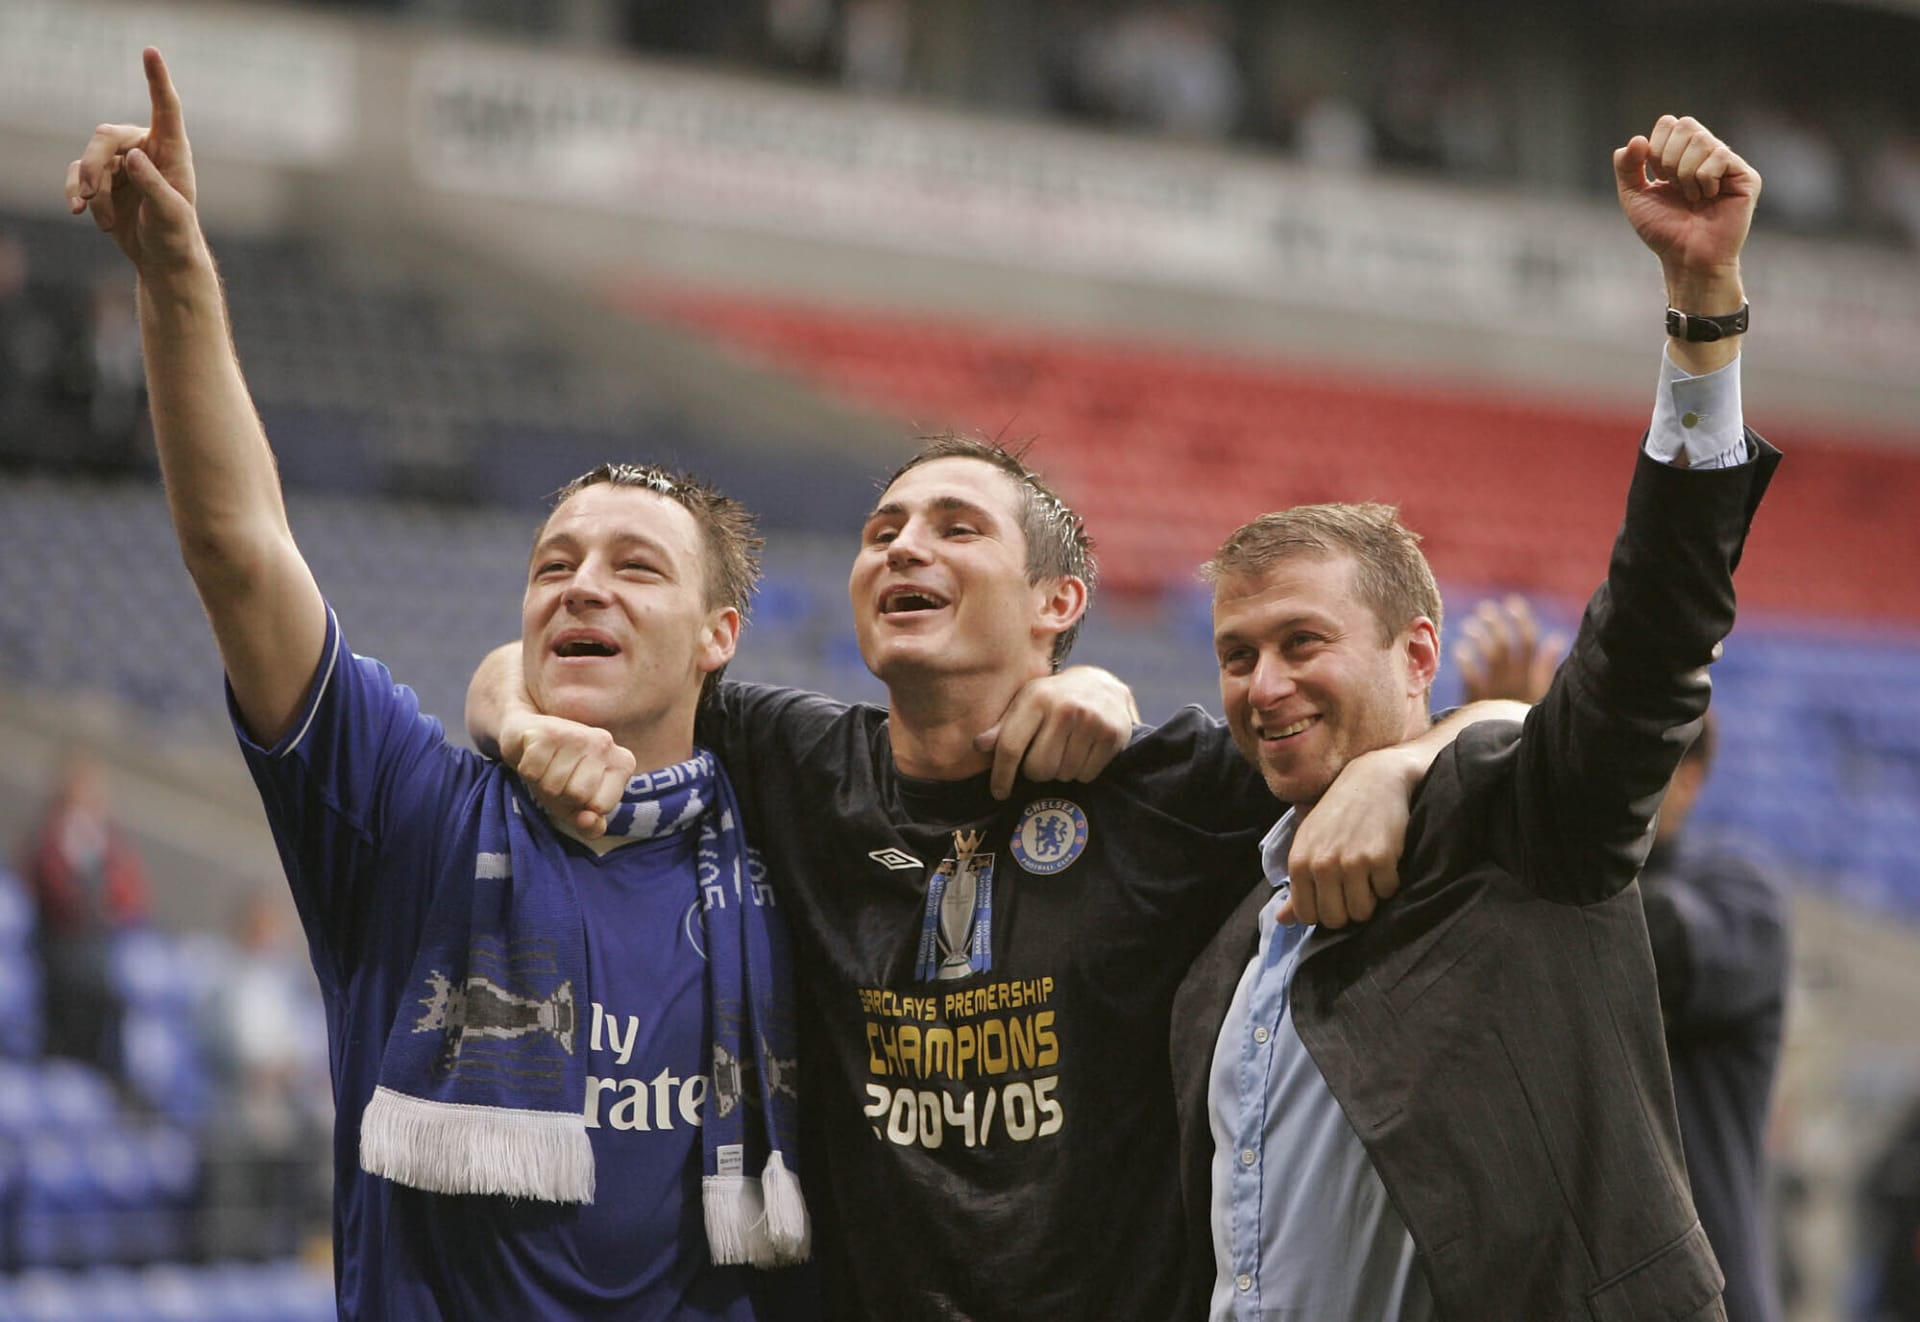 Roman Abramovič slaví ligový titul s Frankem Lampardem (uprostřed) a Johnem Terrym (vlevo).